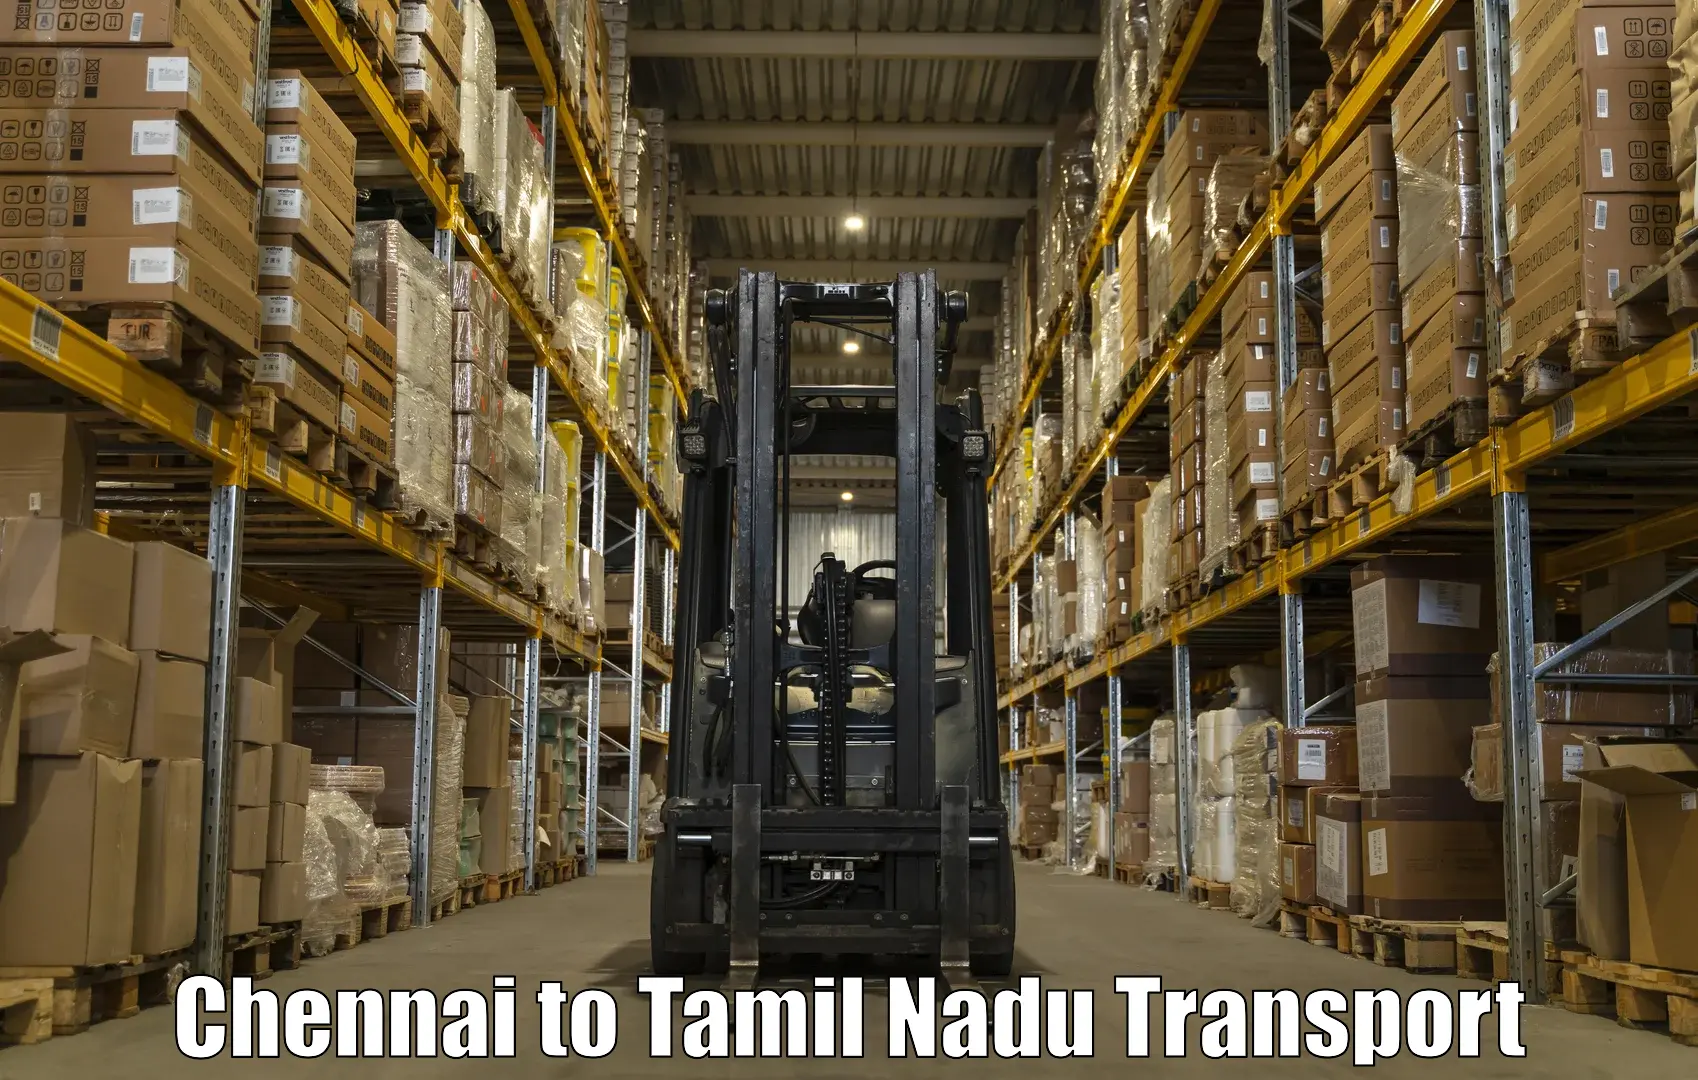 Bike shipping service Chennai to Kodumudi